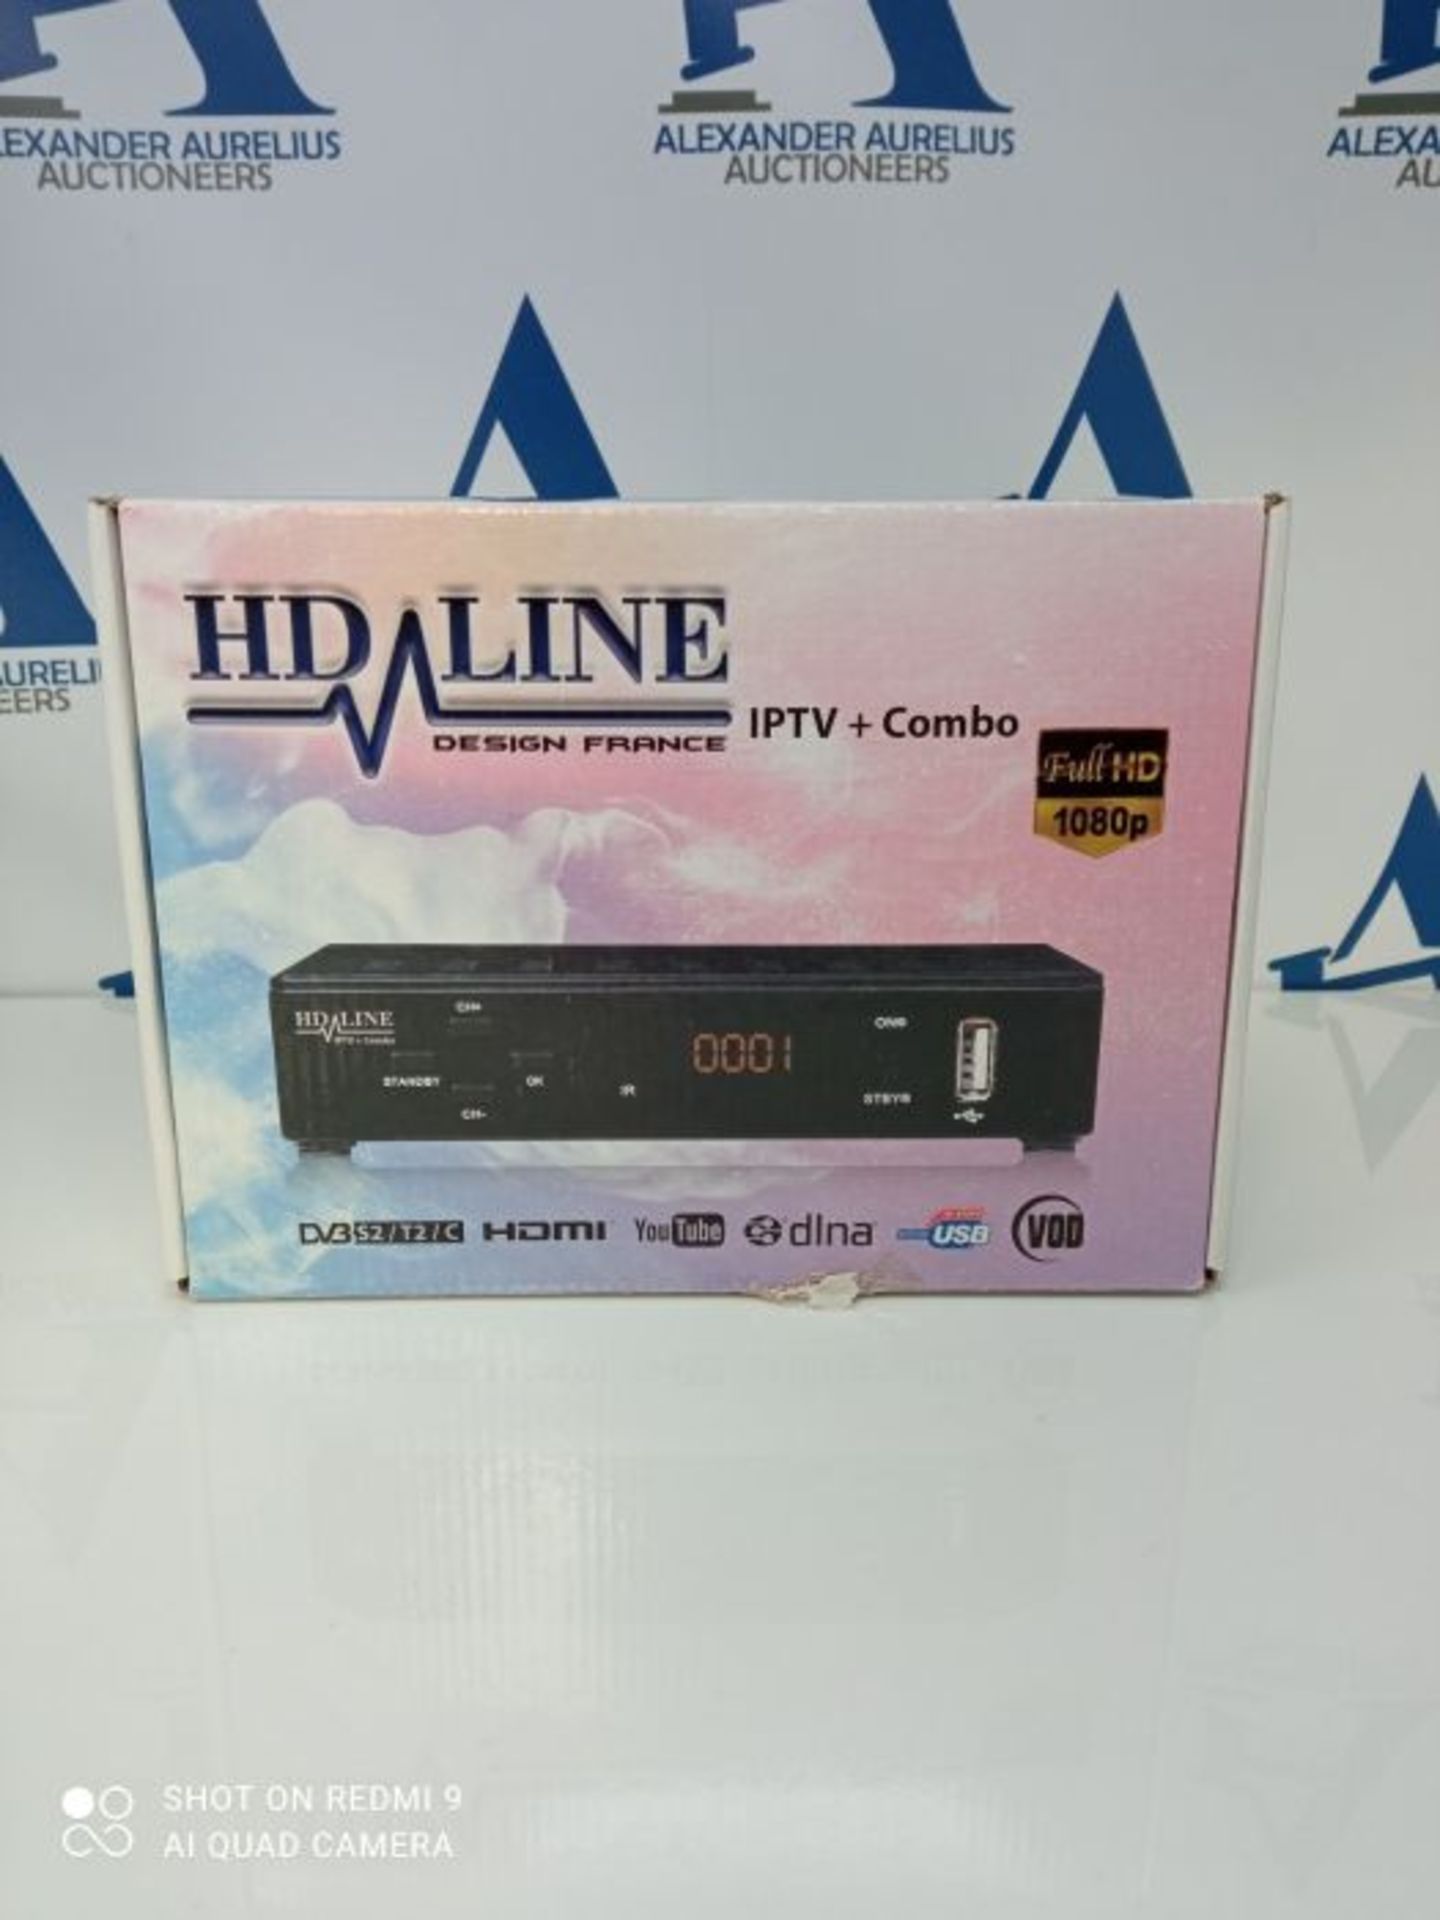 hd-line Tivusat Satelliten SAT Receiver (HDTV, WiFi, DVB-S/S2, HDMI, AV, 2X USB 2.0,) - Image 2 of 3